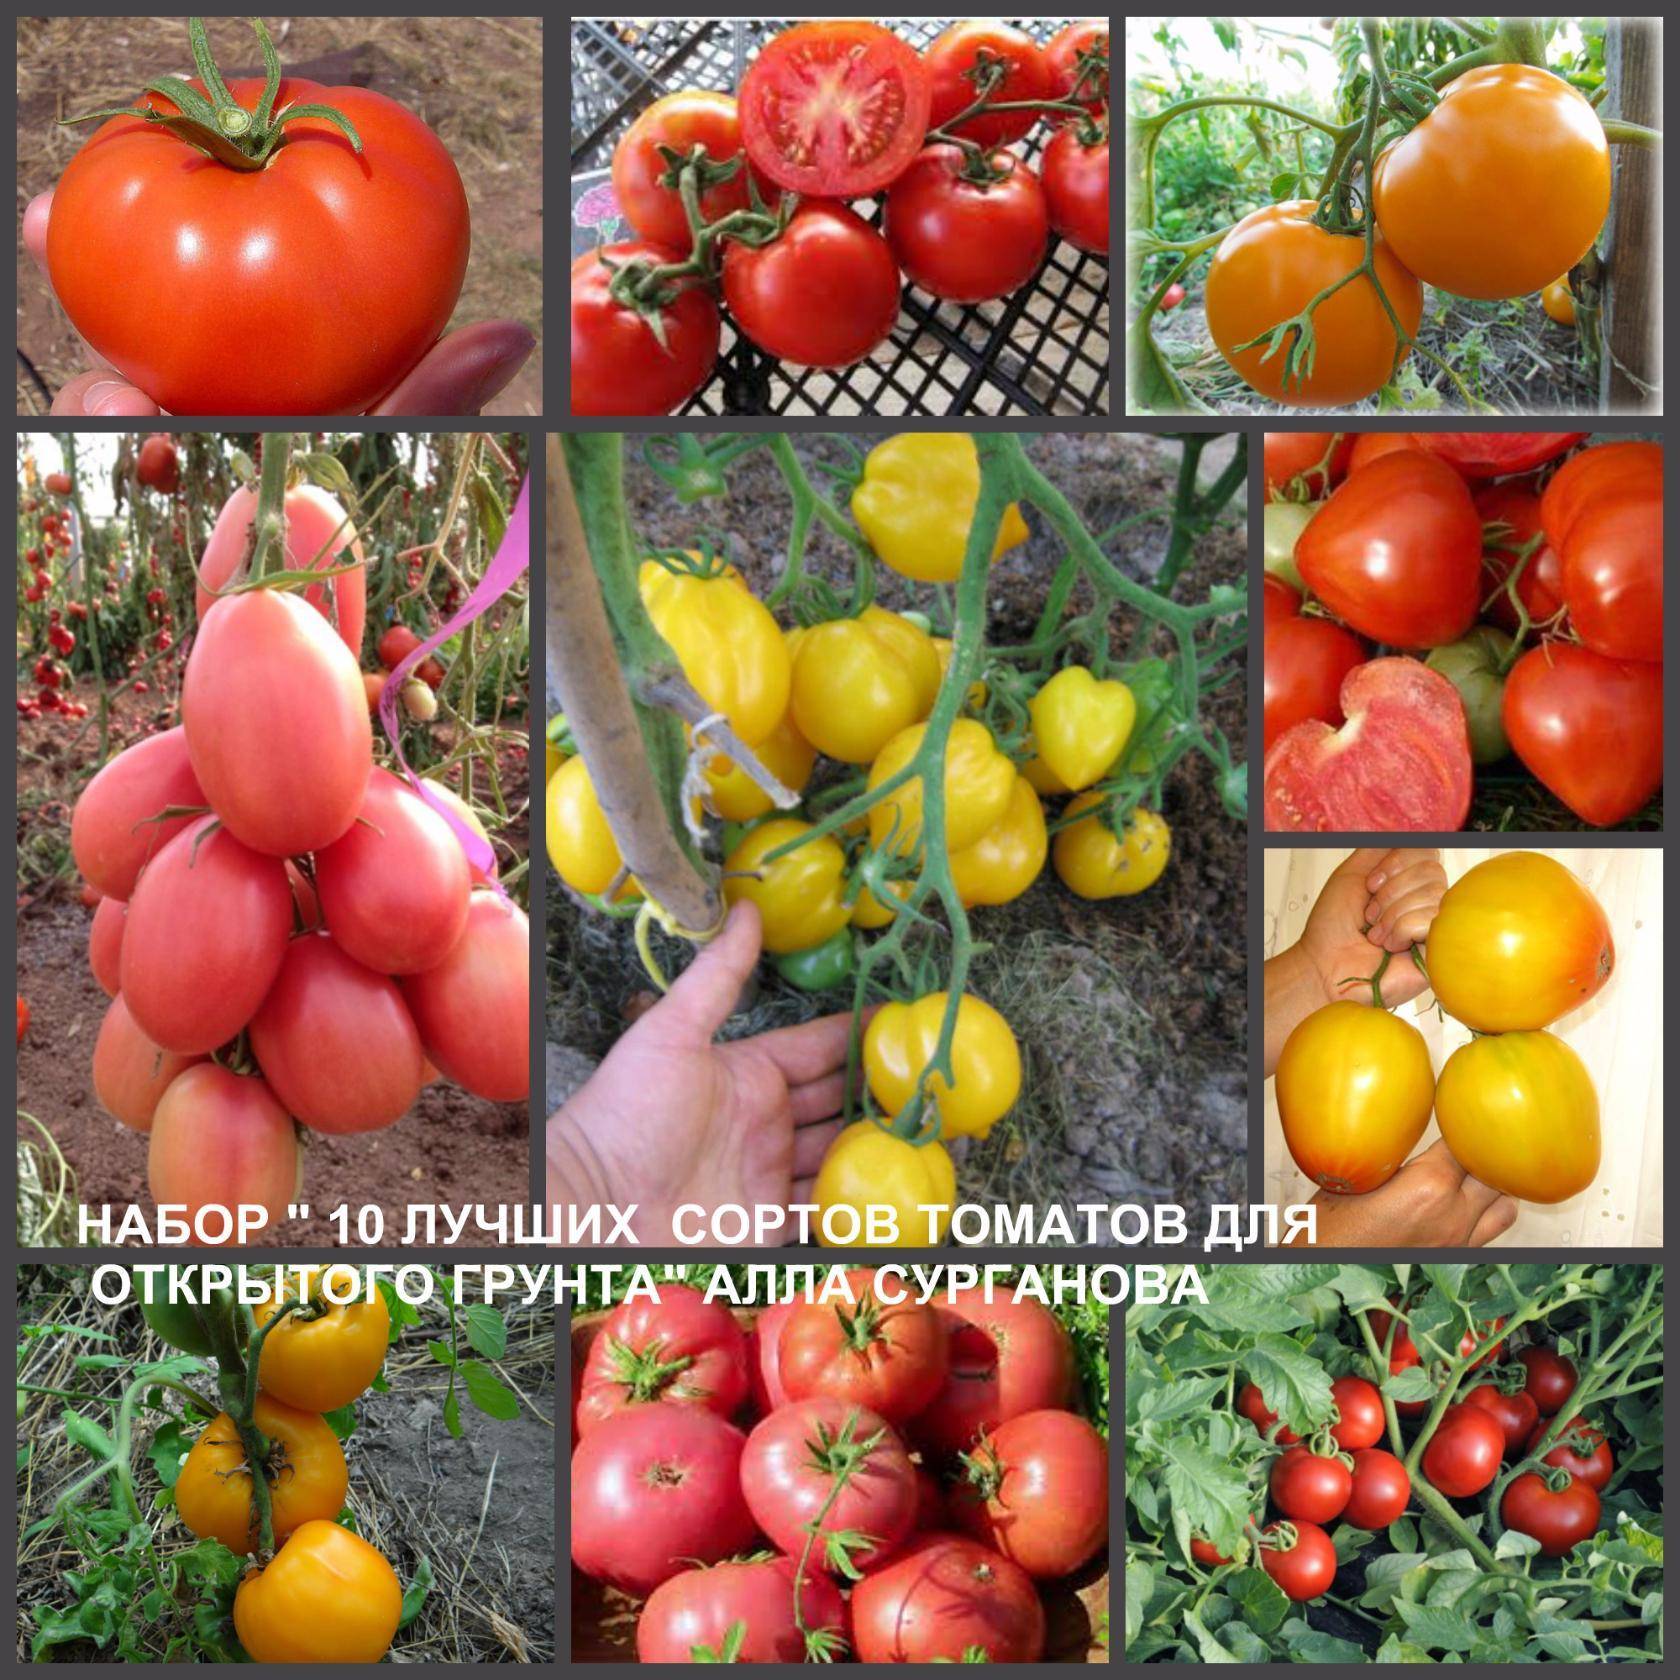 Голландские сорта ранних томатов для теплицы 2021